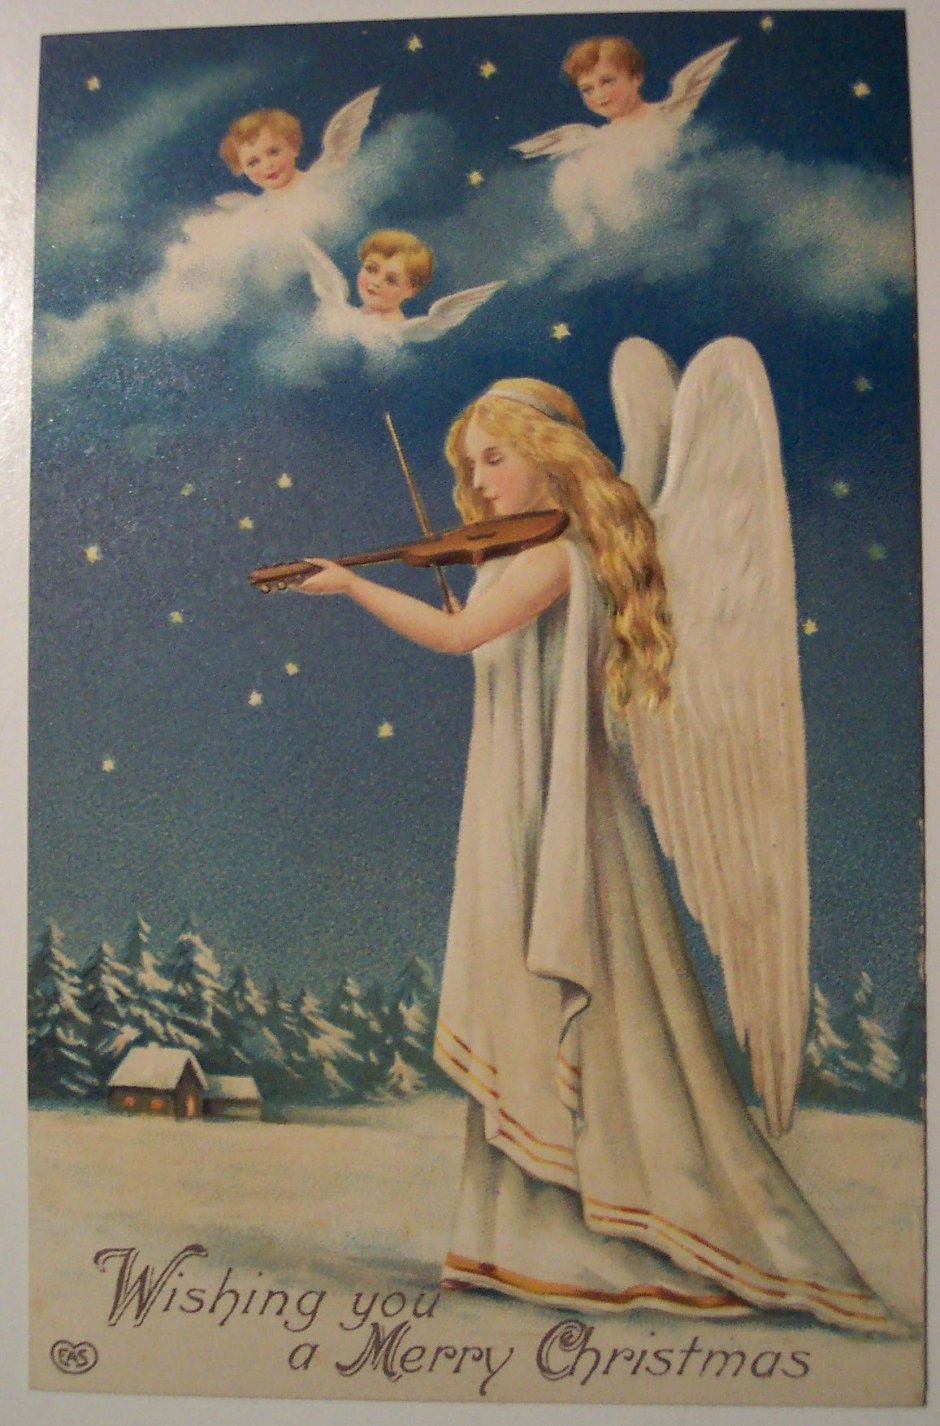 Открытки с Рождеством с ангелами